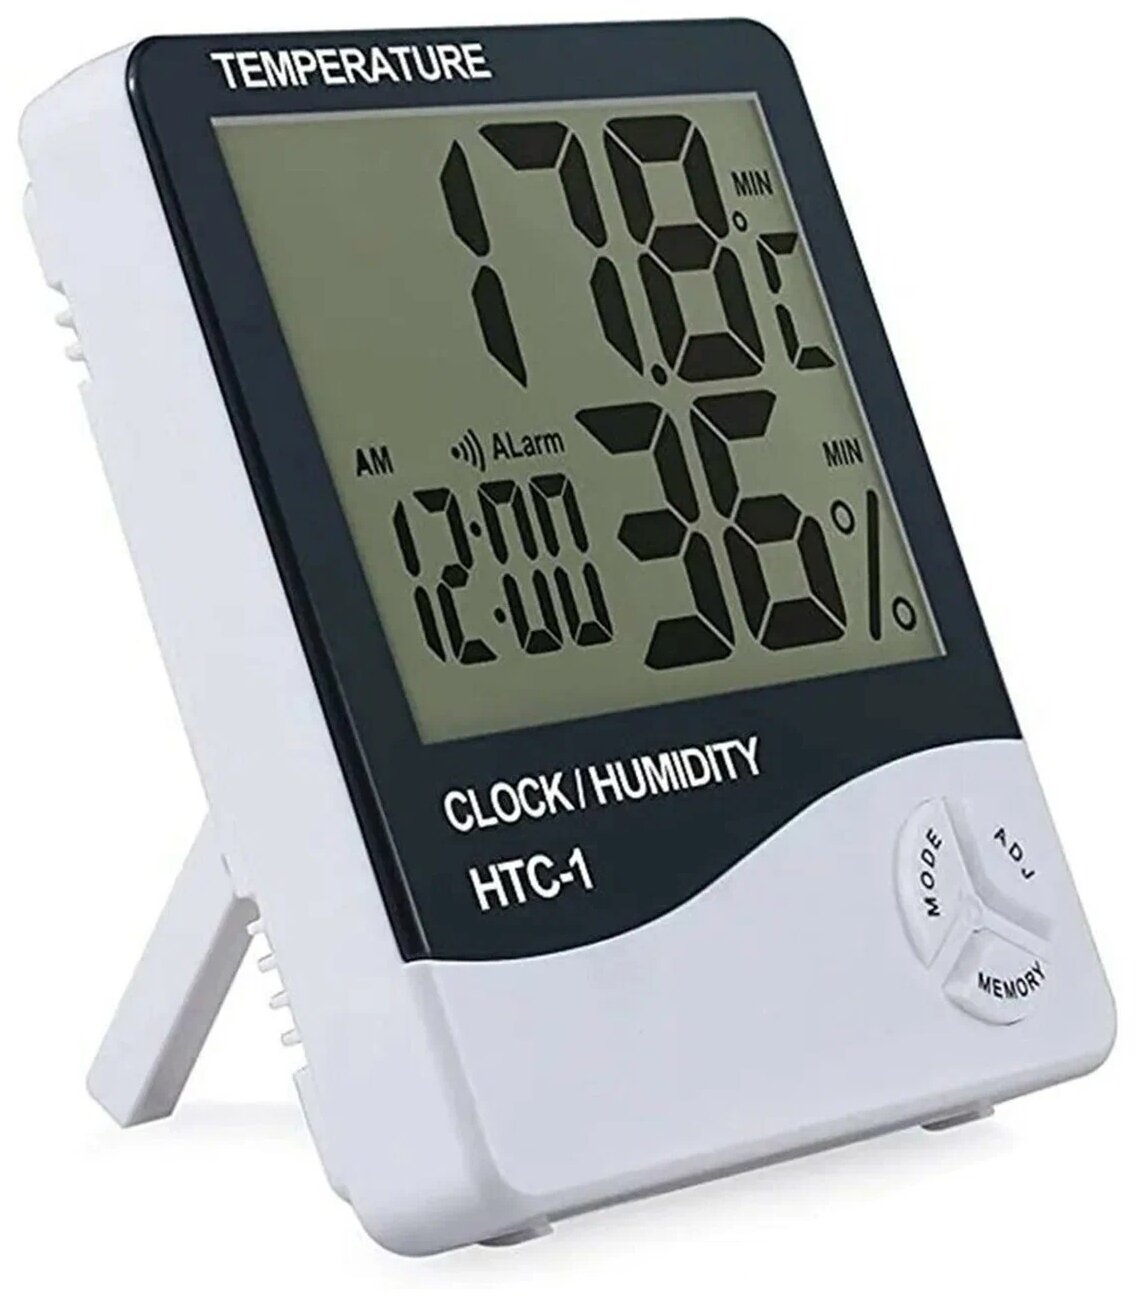 Погодная метеостанция SimpleShop с измерением температуры и влажности воздуха в помещении часами с функцией будильника и календарем гигрометр